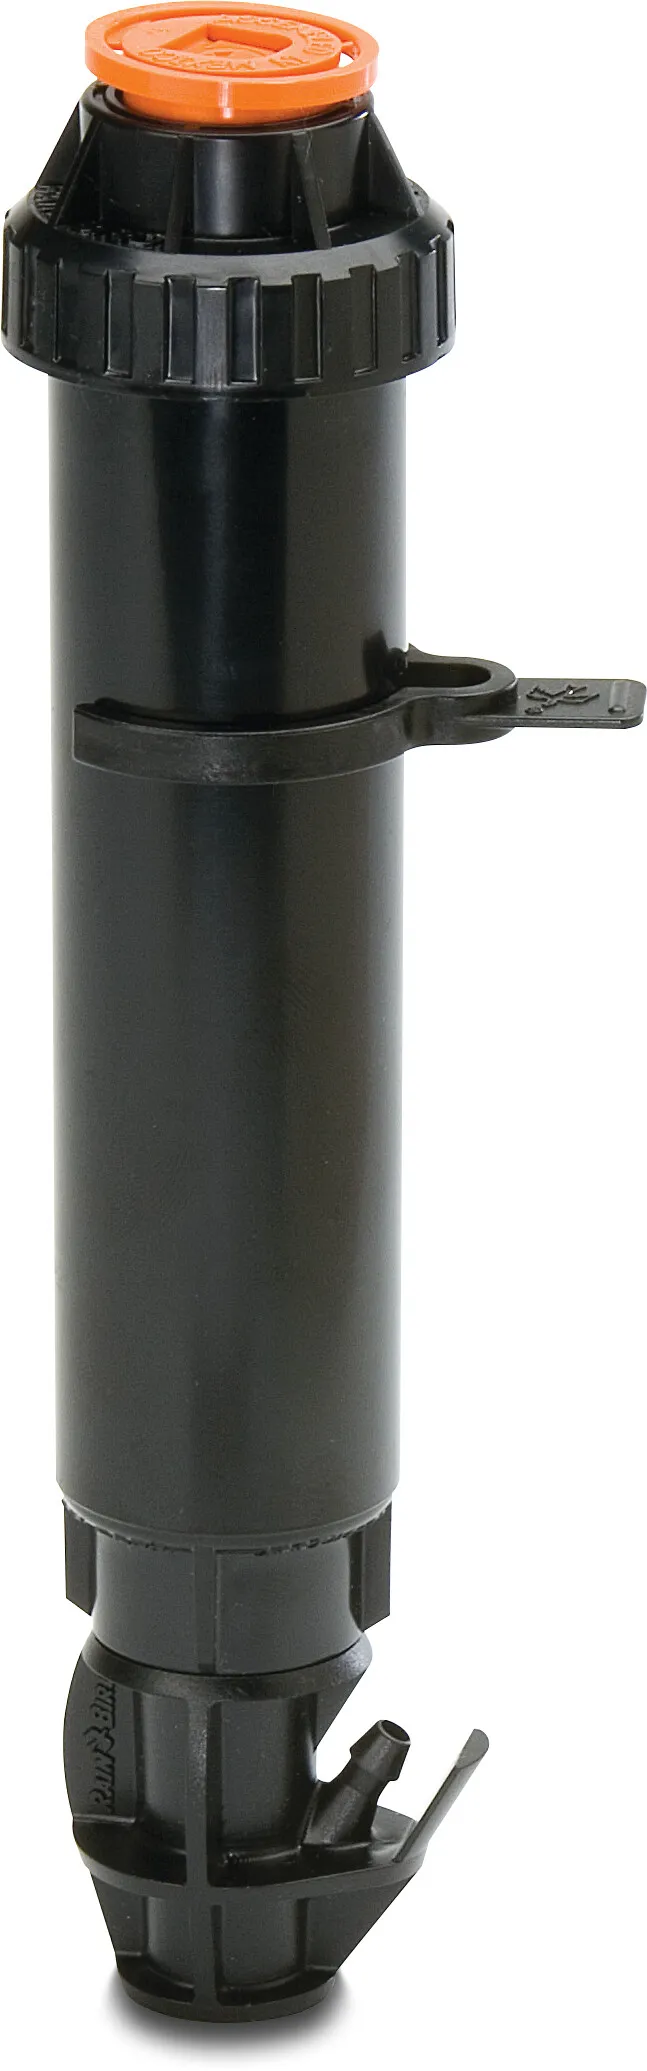 Rain Bird Zraszacz wynurzalny tworzywo sztuczne 6 mm karbowane x UNC-GZ 3.5bar type Xeri-Pop-400X